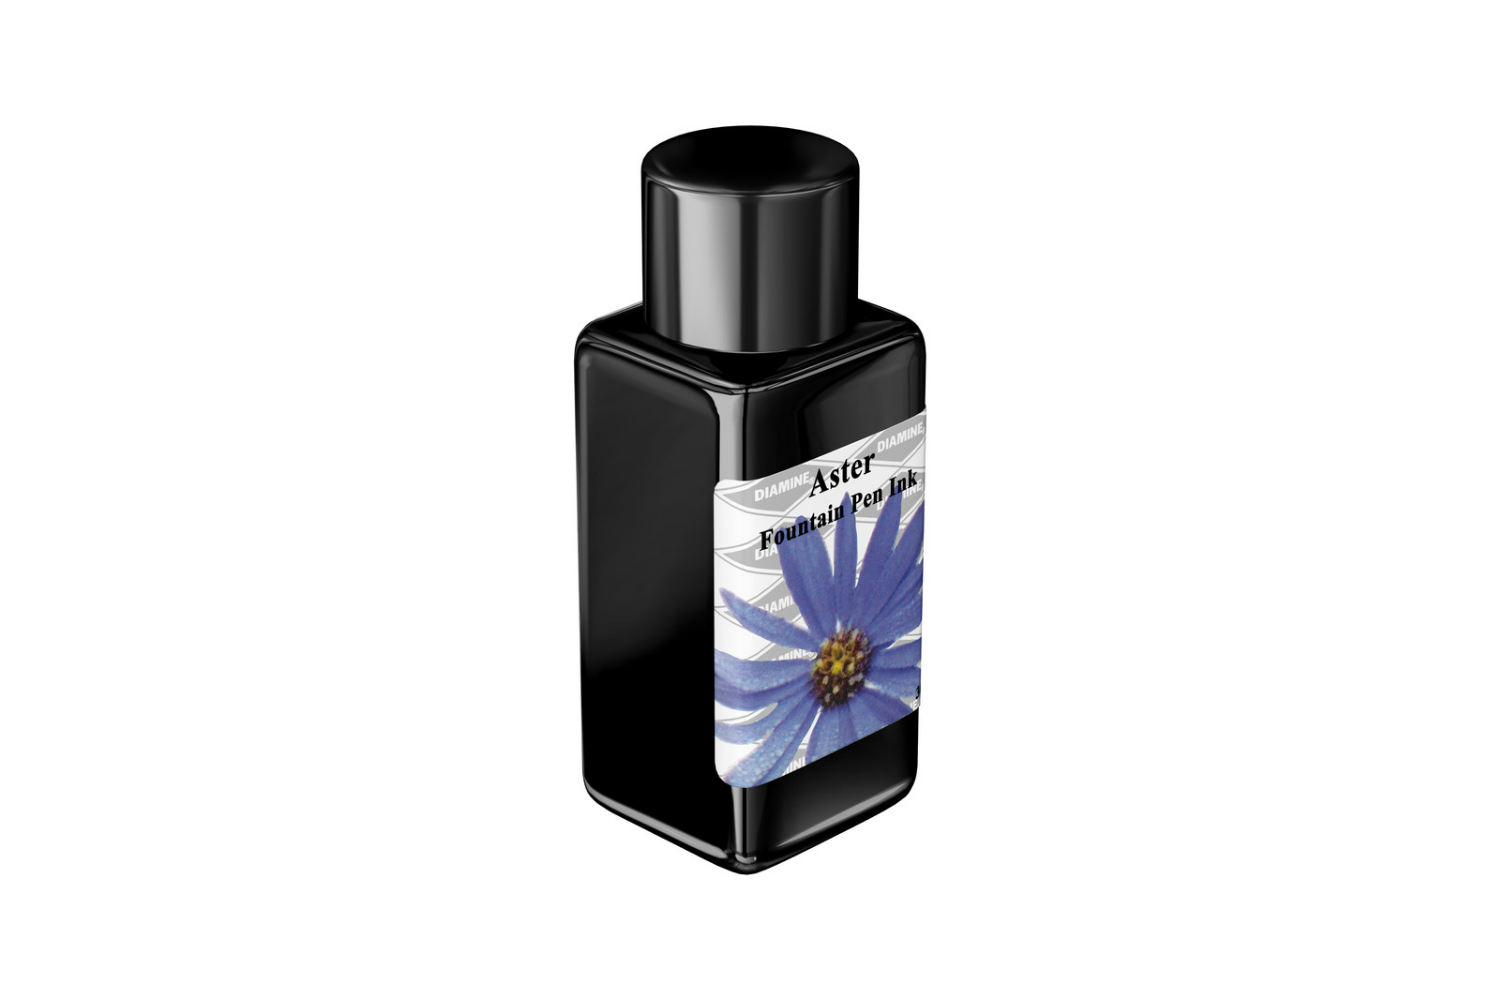 Diamine Flower - Aster Refill Bottled Ink 30 ml